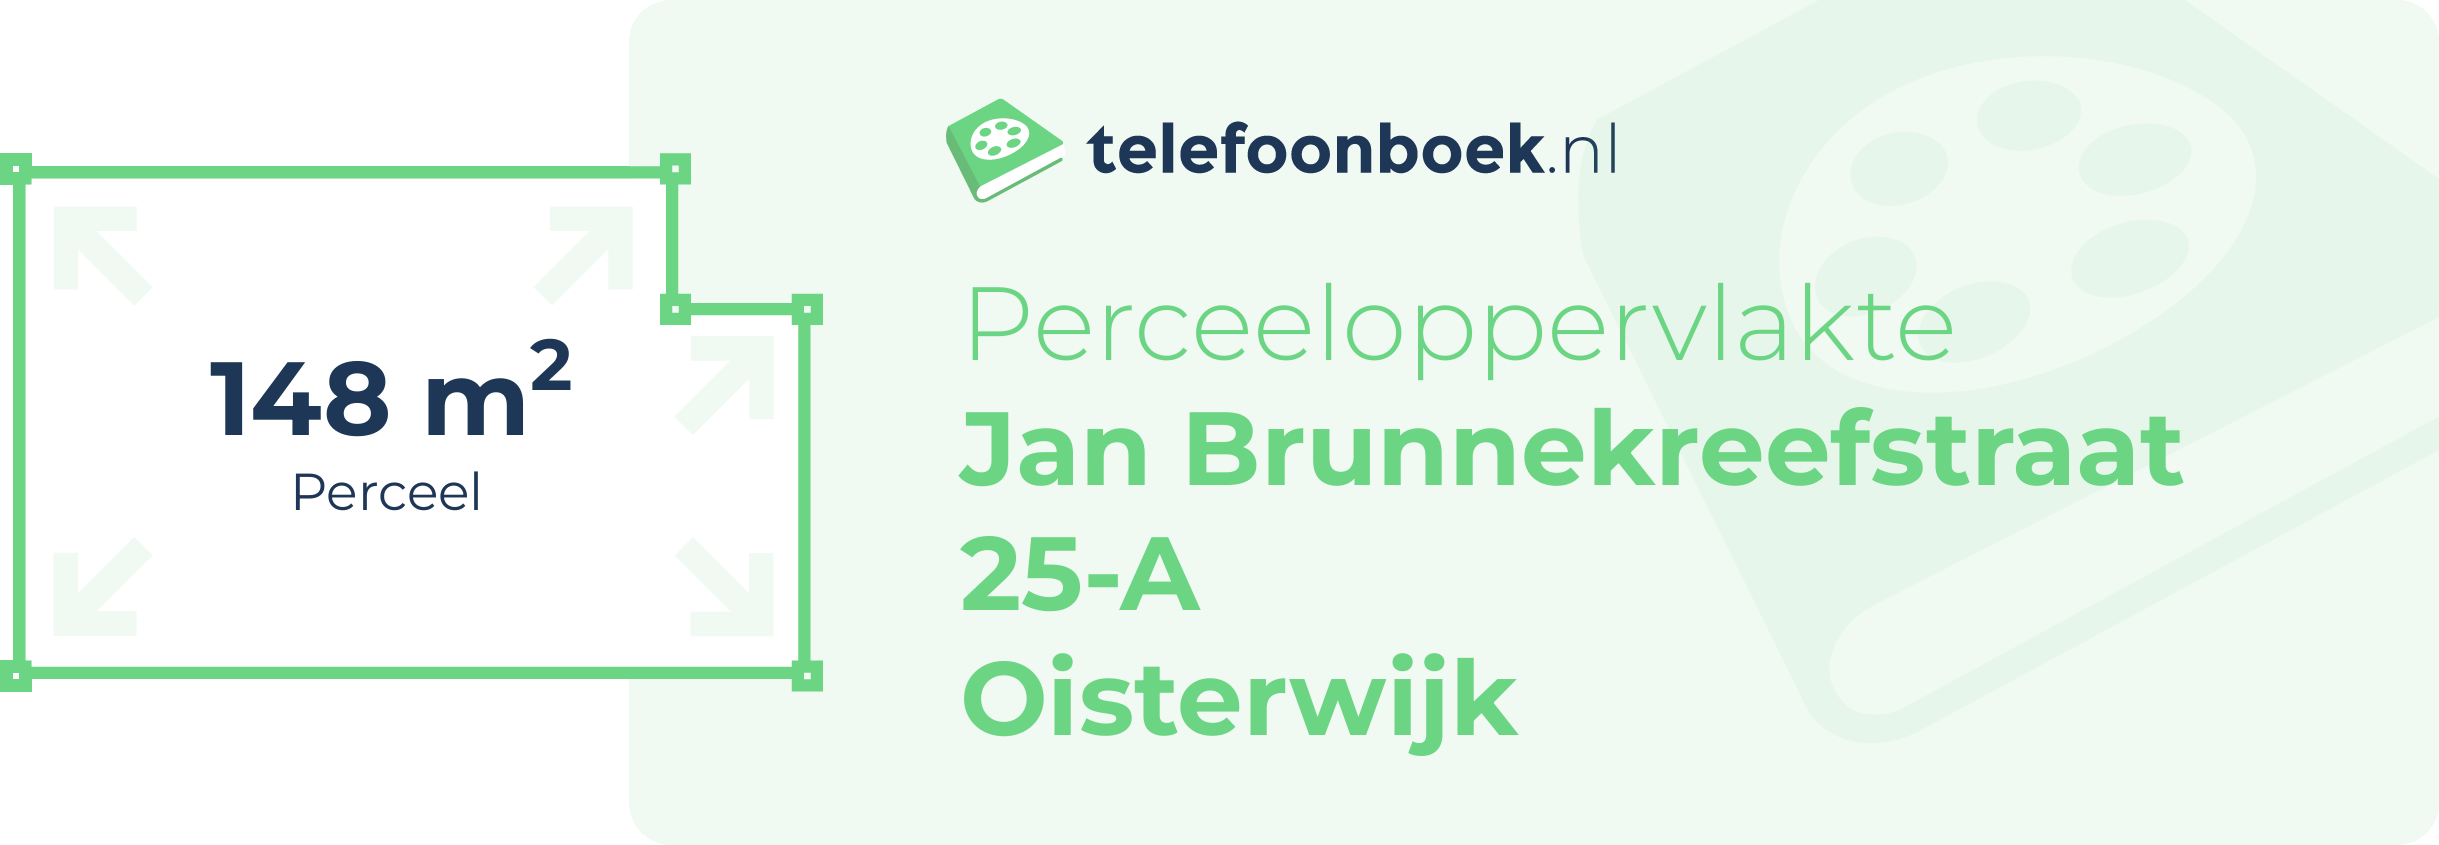 Perceeloppervlakte Jan Brunnekreefstraat 25-A Oisterwijk